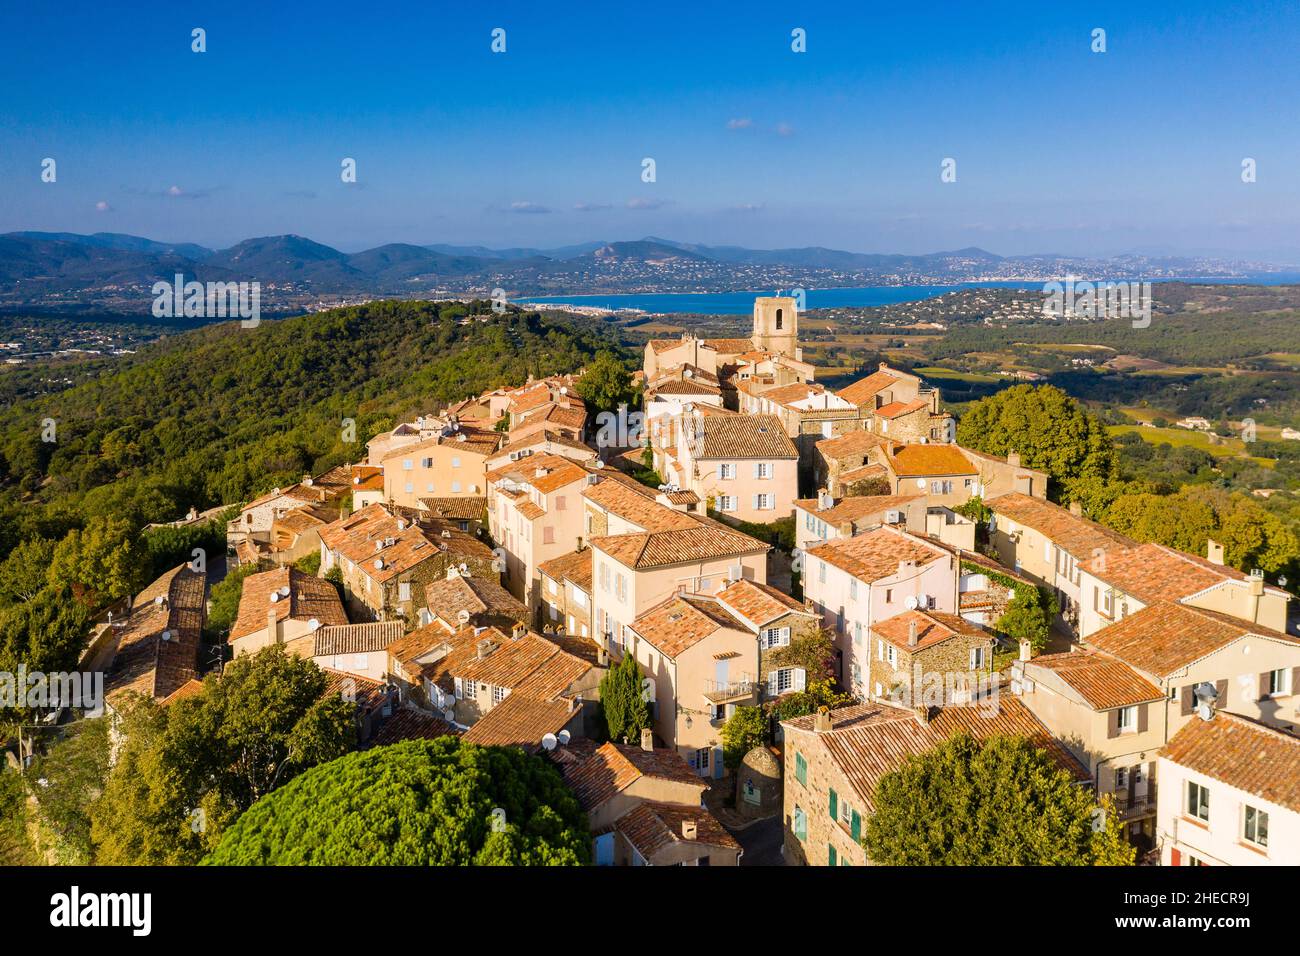 Frankreich, Var, Golf von Saint Tropez, Gassin, beschriftet Les Plus Beaux Villages de France (die schönsten Dörfer Frankreichs), allgemeine Ansicht des Vil Stockfoto